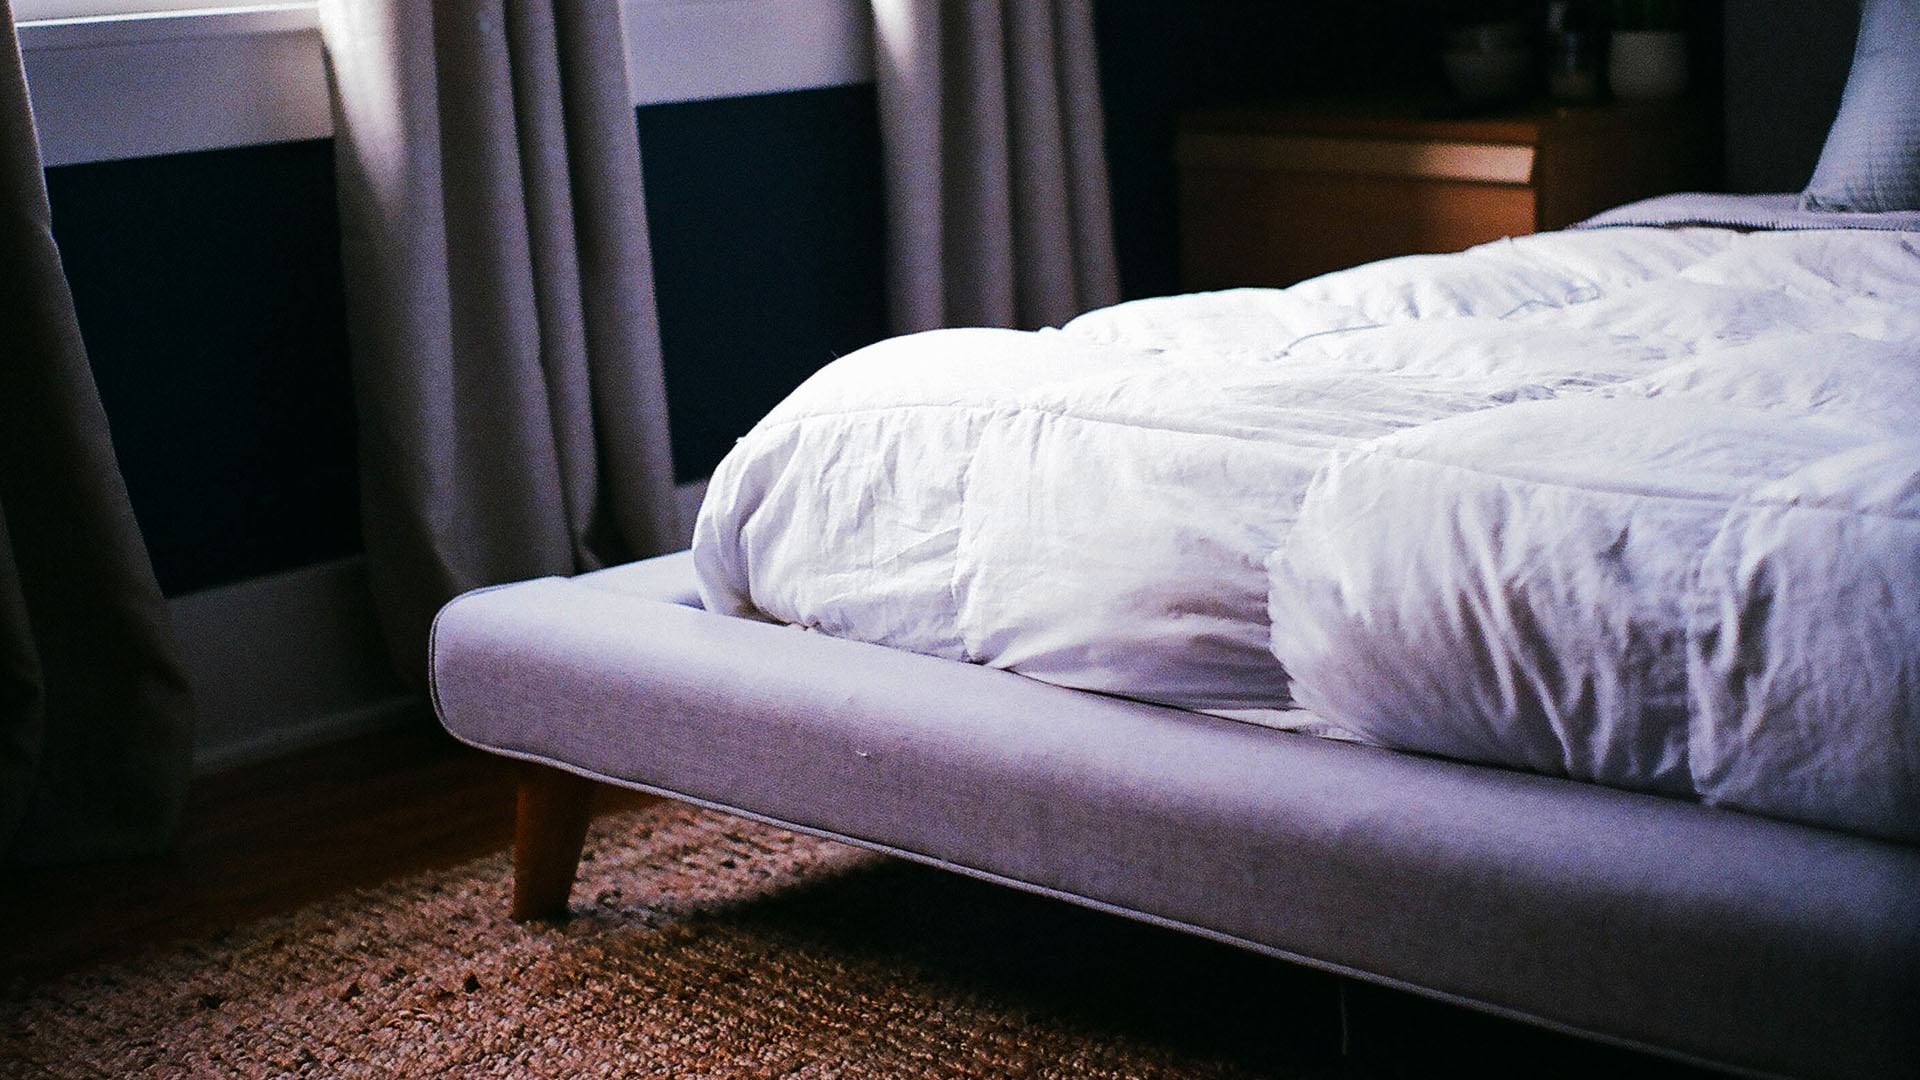 A mattress like those made by Corsicana Mattress